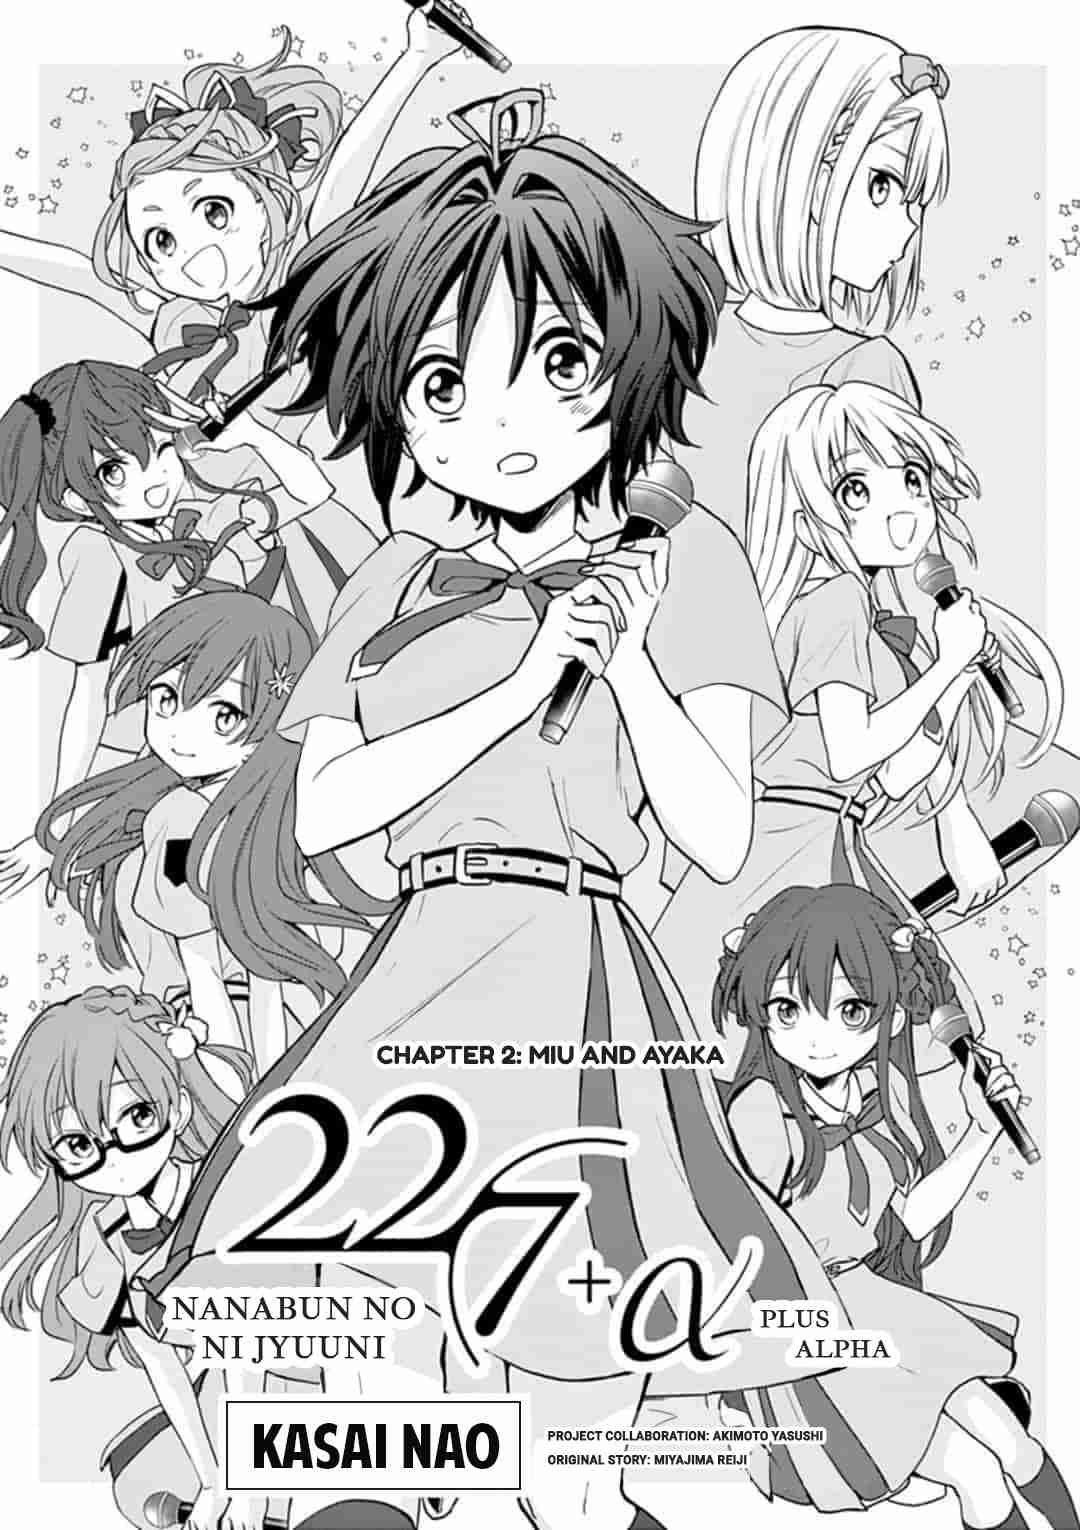 22/7 (Nanabun no Nijyuuni) +α Ch. 2 Miu and Ayaka